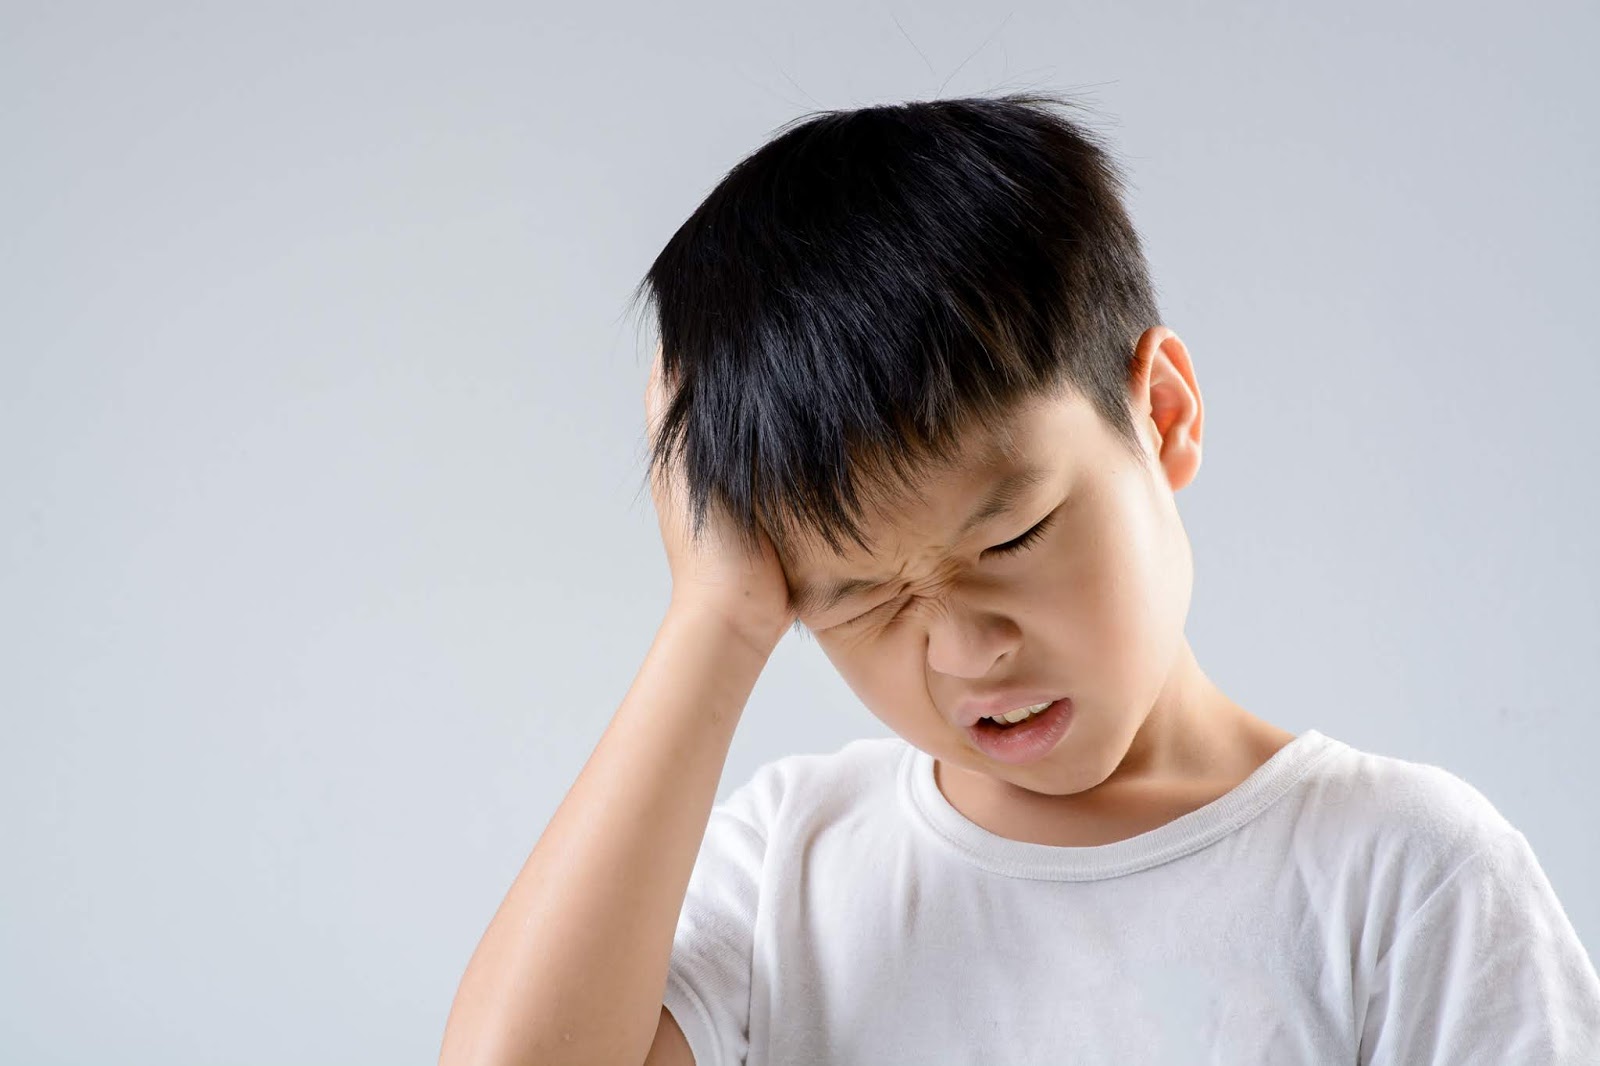   Trẻ bị đau đầu có thể là dấu hiệu căng thẳng  